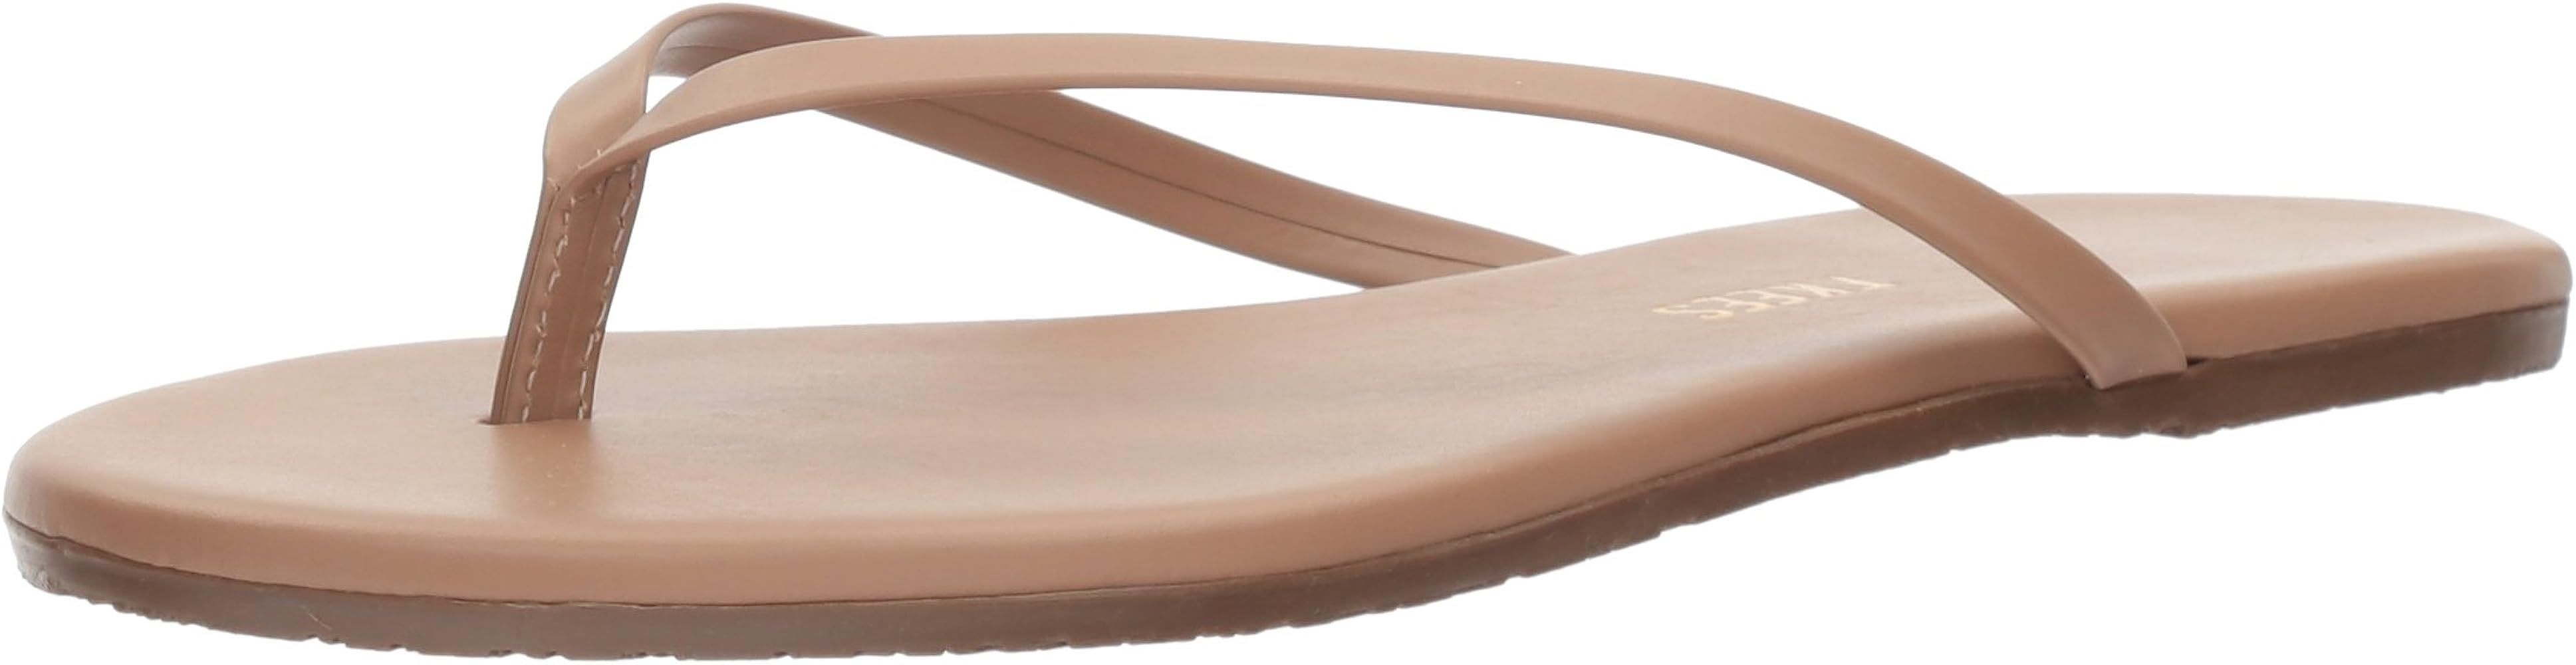 Tkees Women's Flip-Flop-Glitters Angel Wings Sandal | Amazon (US)